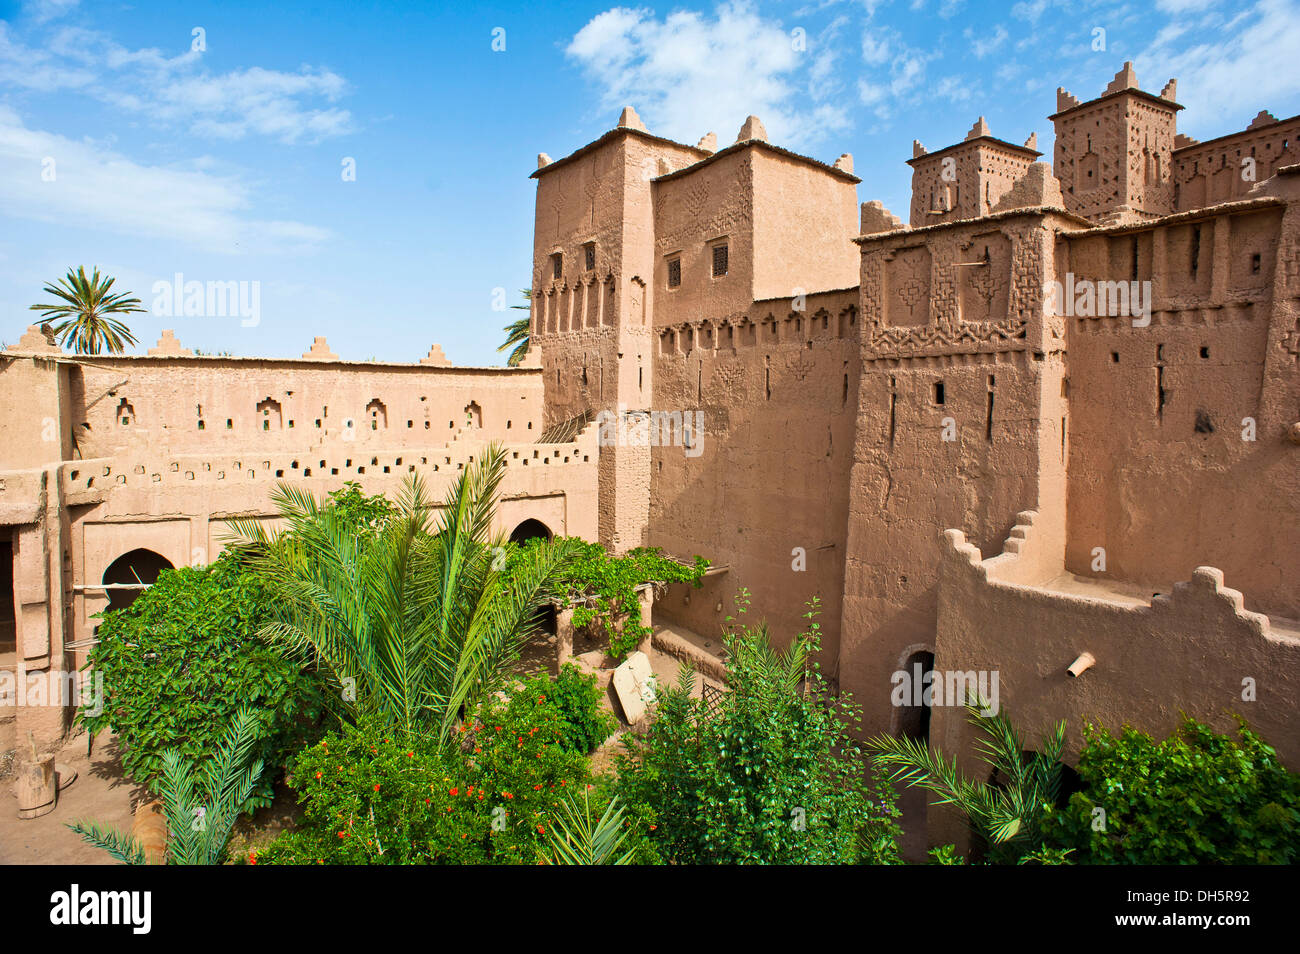 Les tours et murs avec des décorations ornementales et cour intérieure avec des arbres d'une Kasbah, forteresse de brique de boue du peuple Berbère Banque D'Images